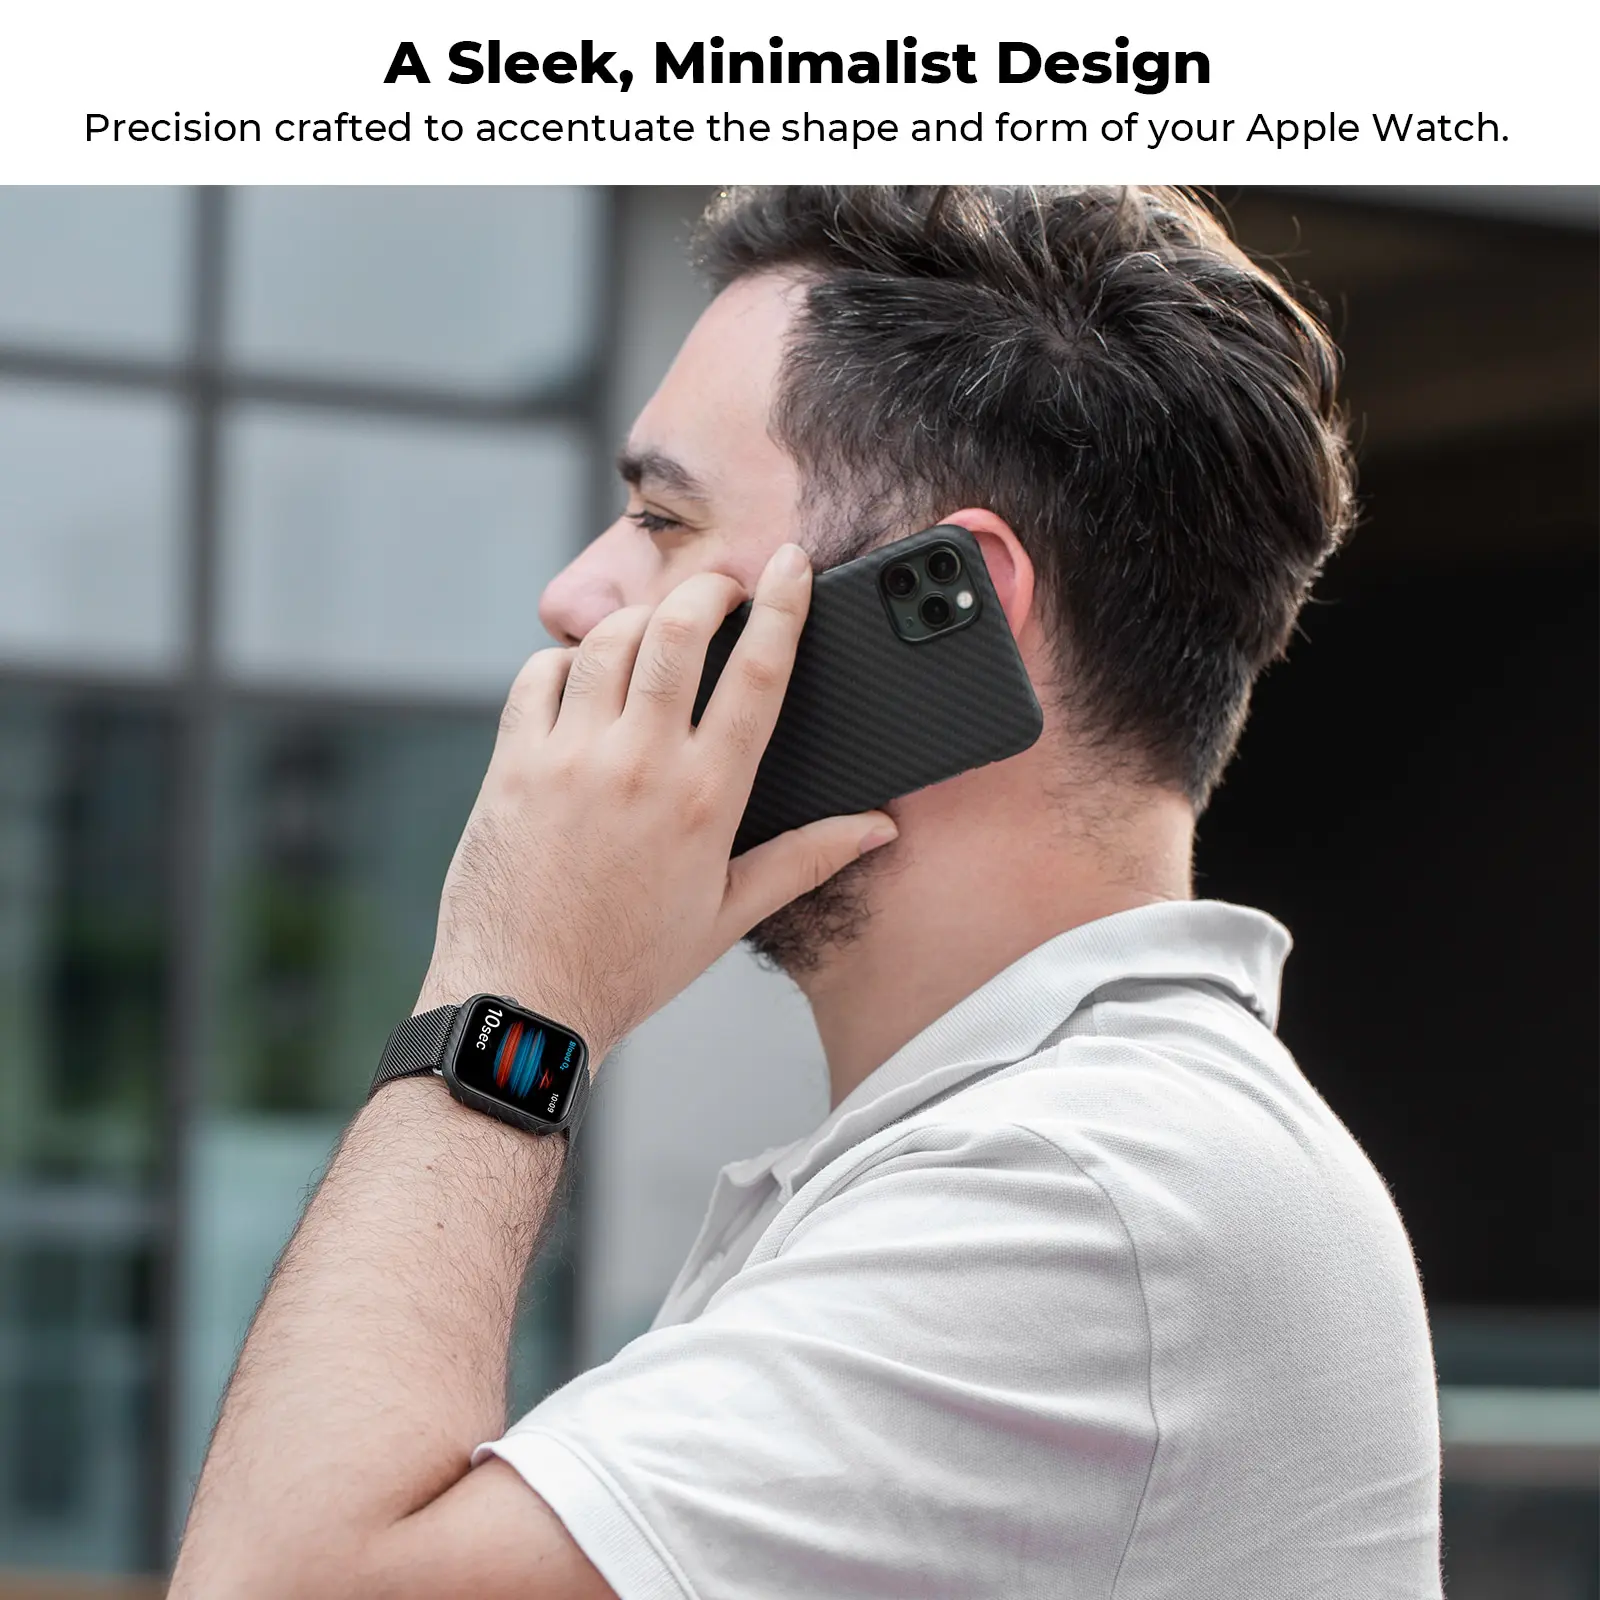 เคส Pitaka รุ่น Air - Apple Watch 45mm - สี Black/Grey Twill